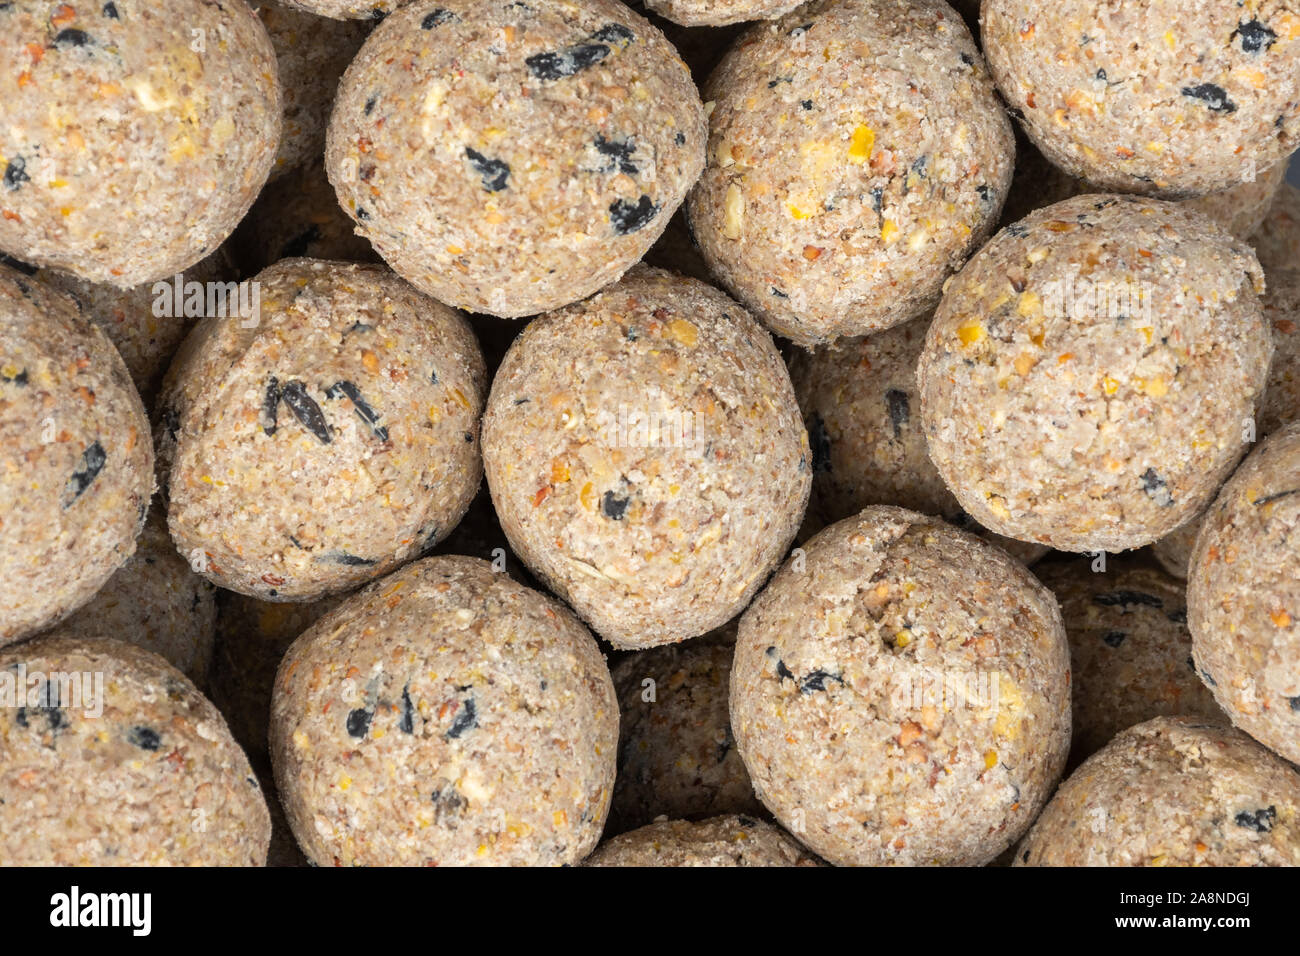 Close-up de boules de graisse pour oiseaux (alimentaire) Boules de suif Banque D'Images